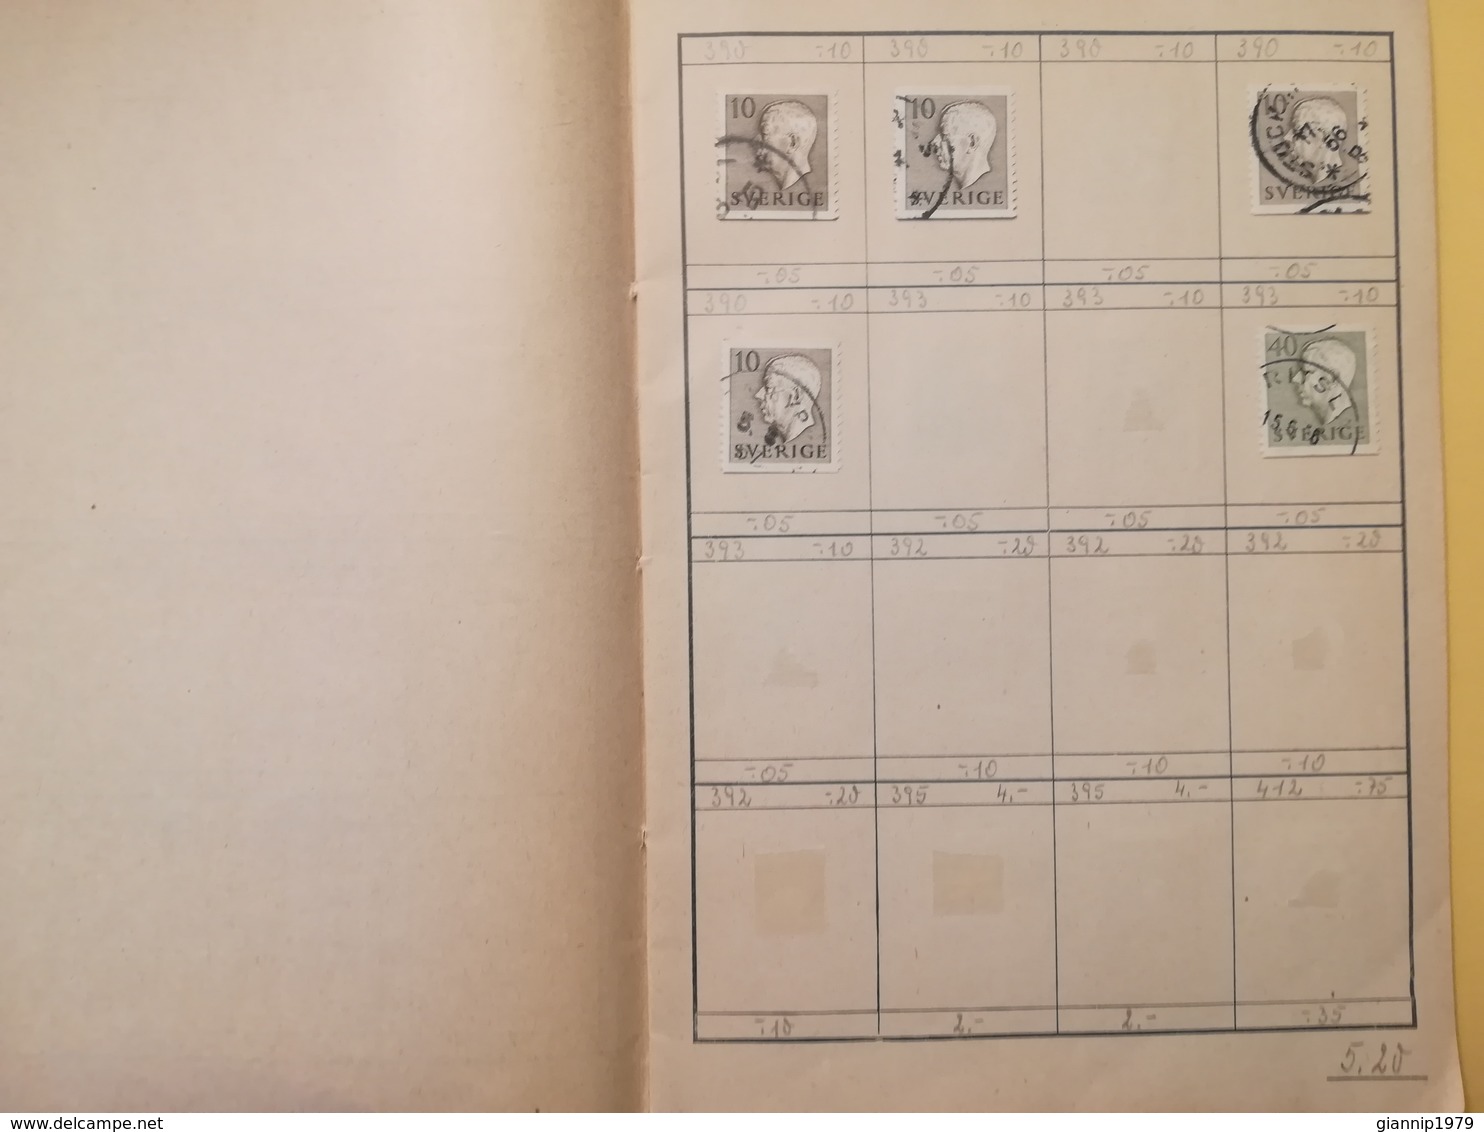 LIBRETTO FRANCOBOLLI STAMPS AUSWAHLHEFT OPUSCOLO BOOK LOTTO COLLEZIONI SVEZIA SVERIGE  OLTRE 130 PEZZI - Collections